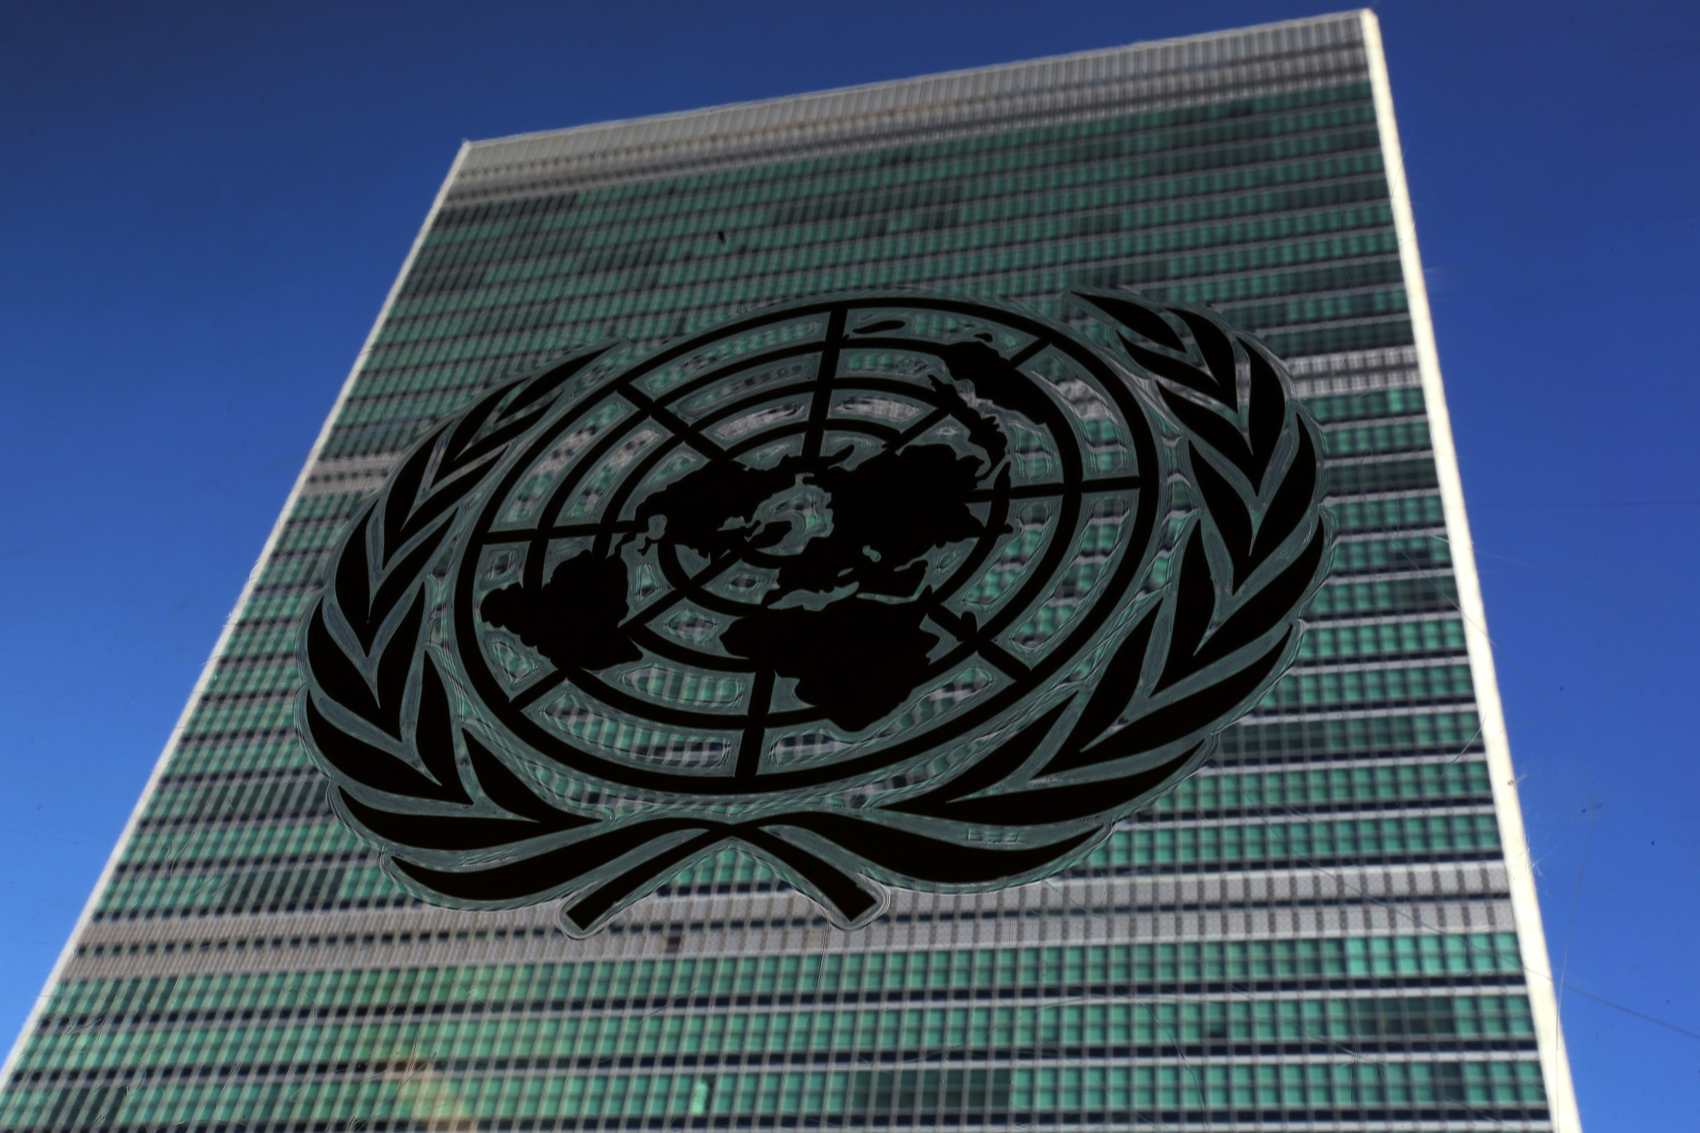 ONU adopta resolución pidiendo detener conflictos por la pandemia